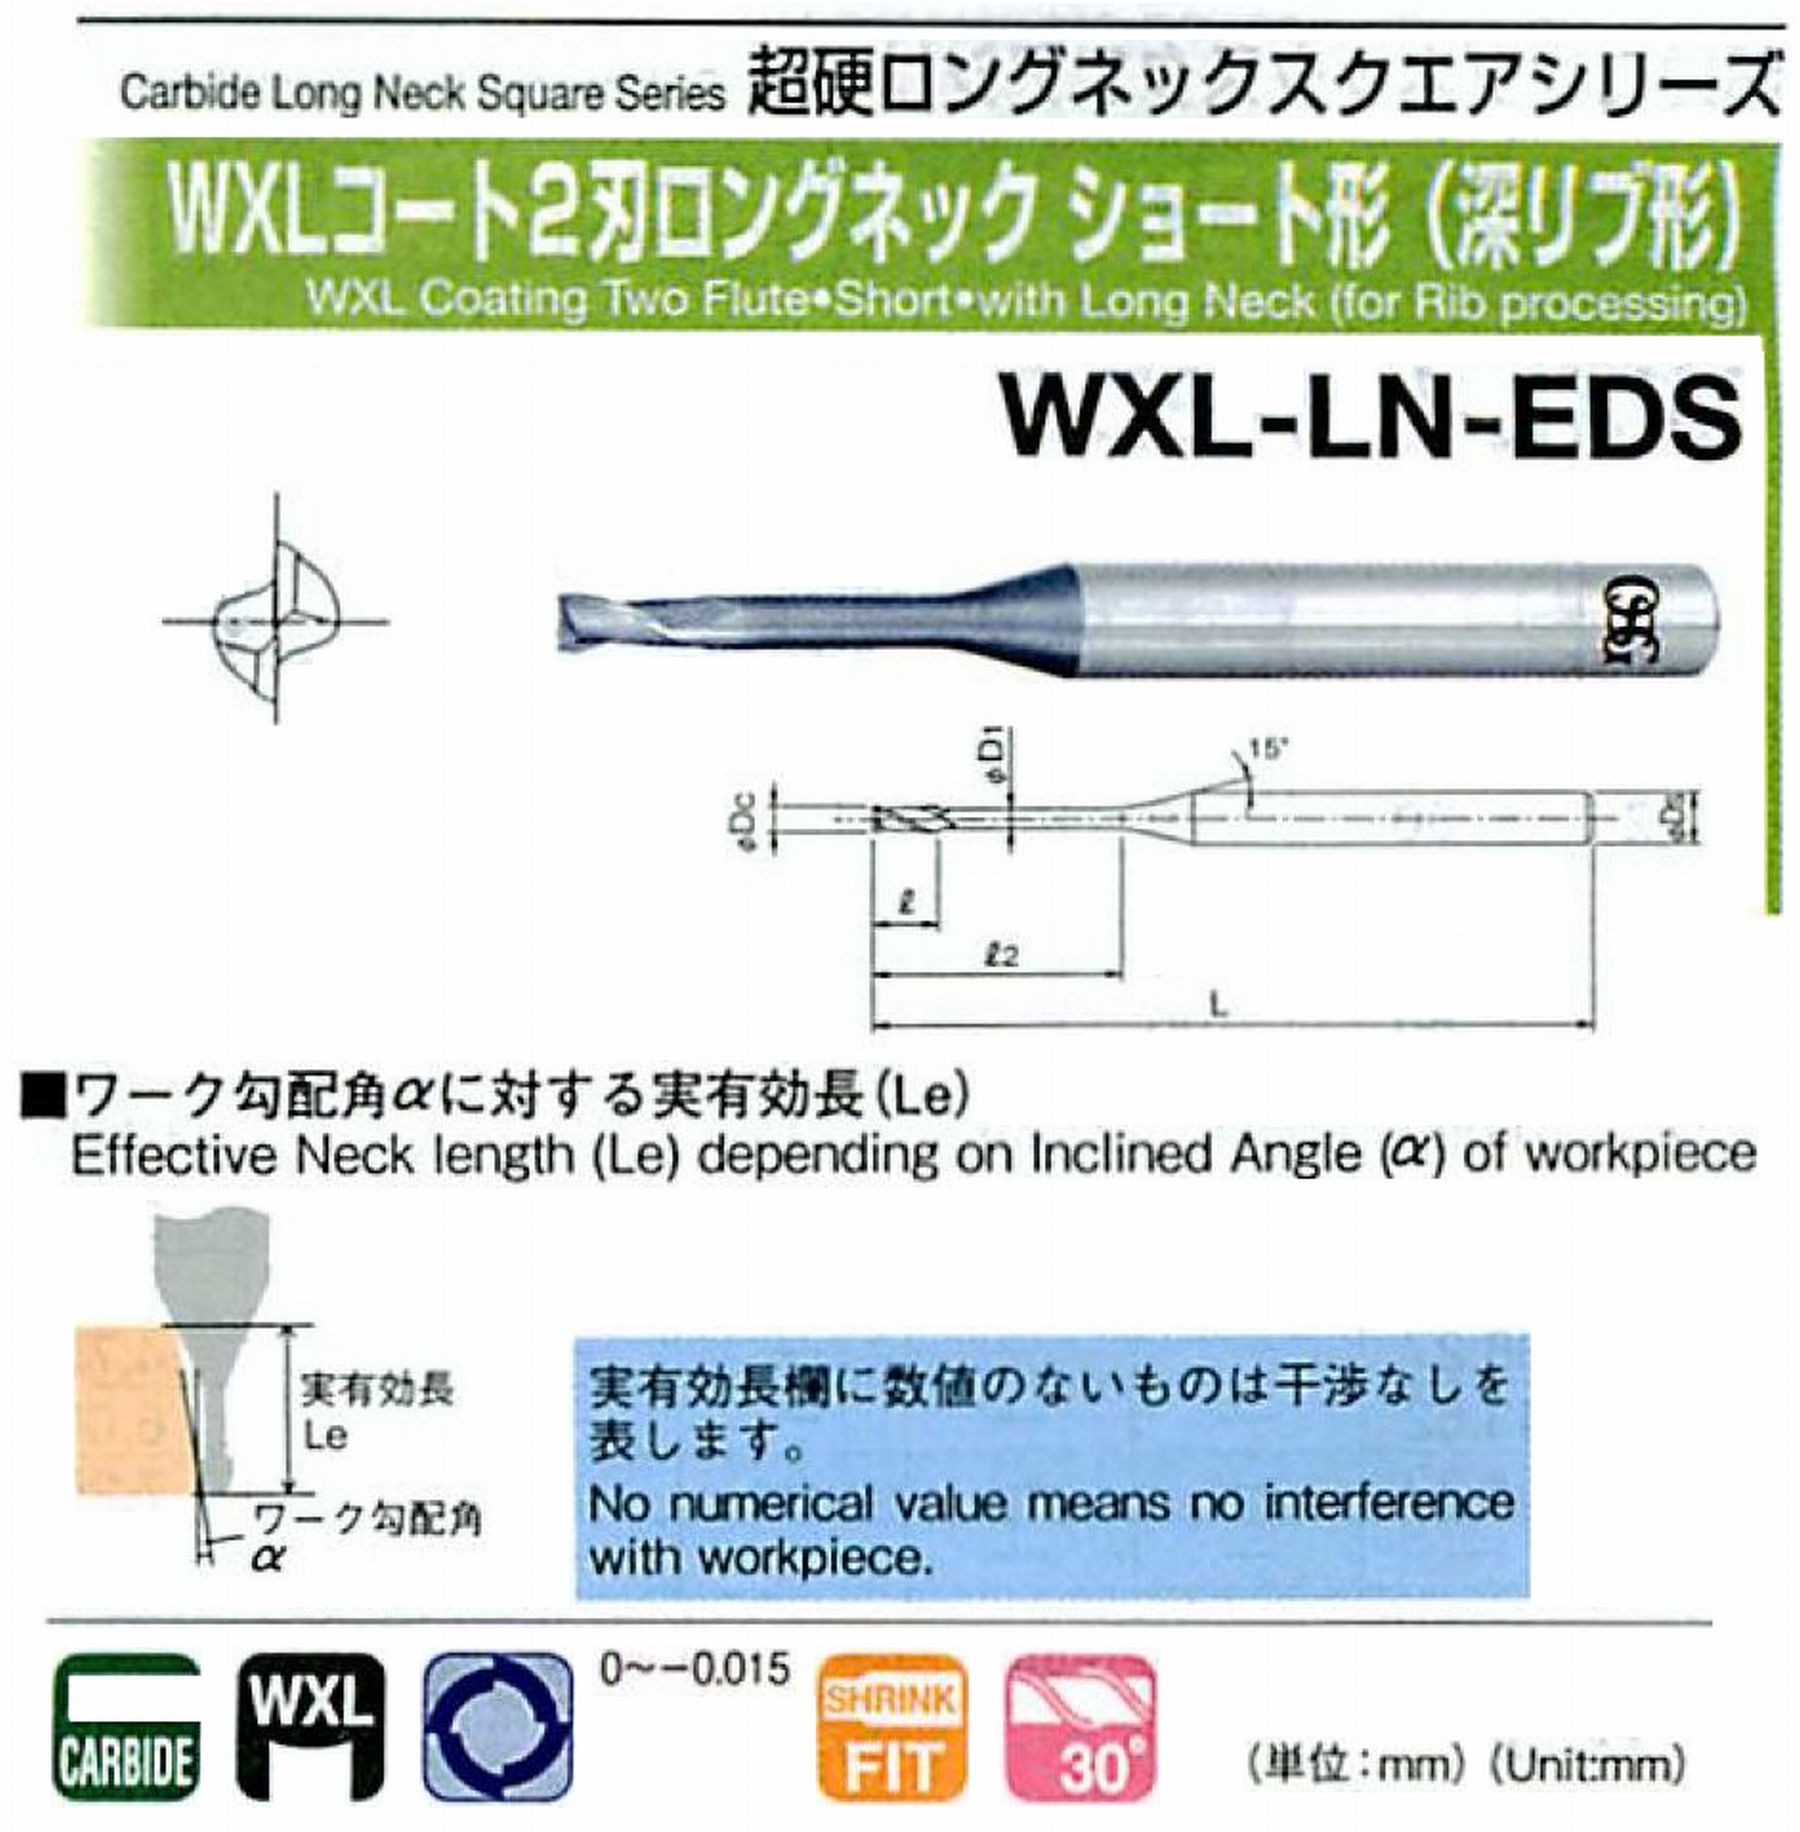 オーエスジー/OSG WXLコート2刃 ロングネックショート形(深リブ形) WXL-LN-EDS 外径×首下長0.8×12 全長45 刃長1.2 シャンク径4mm 首径0.75